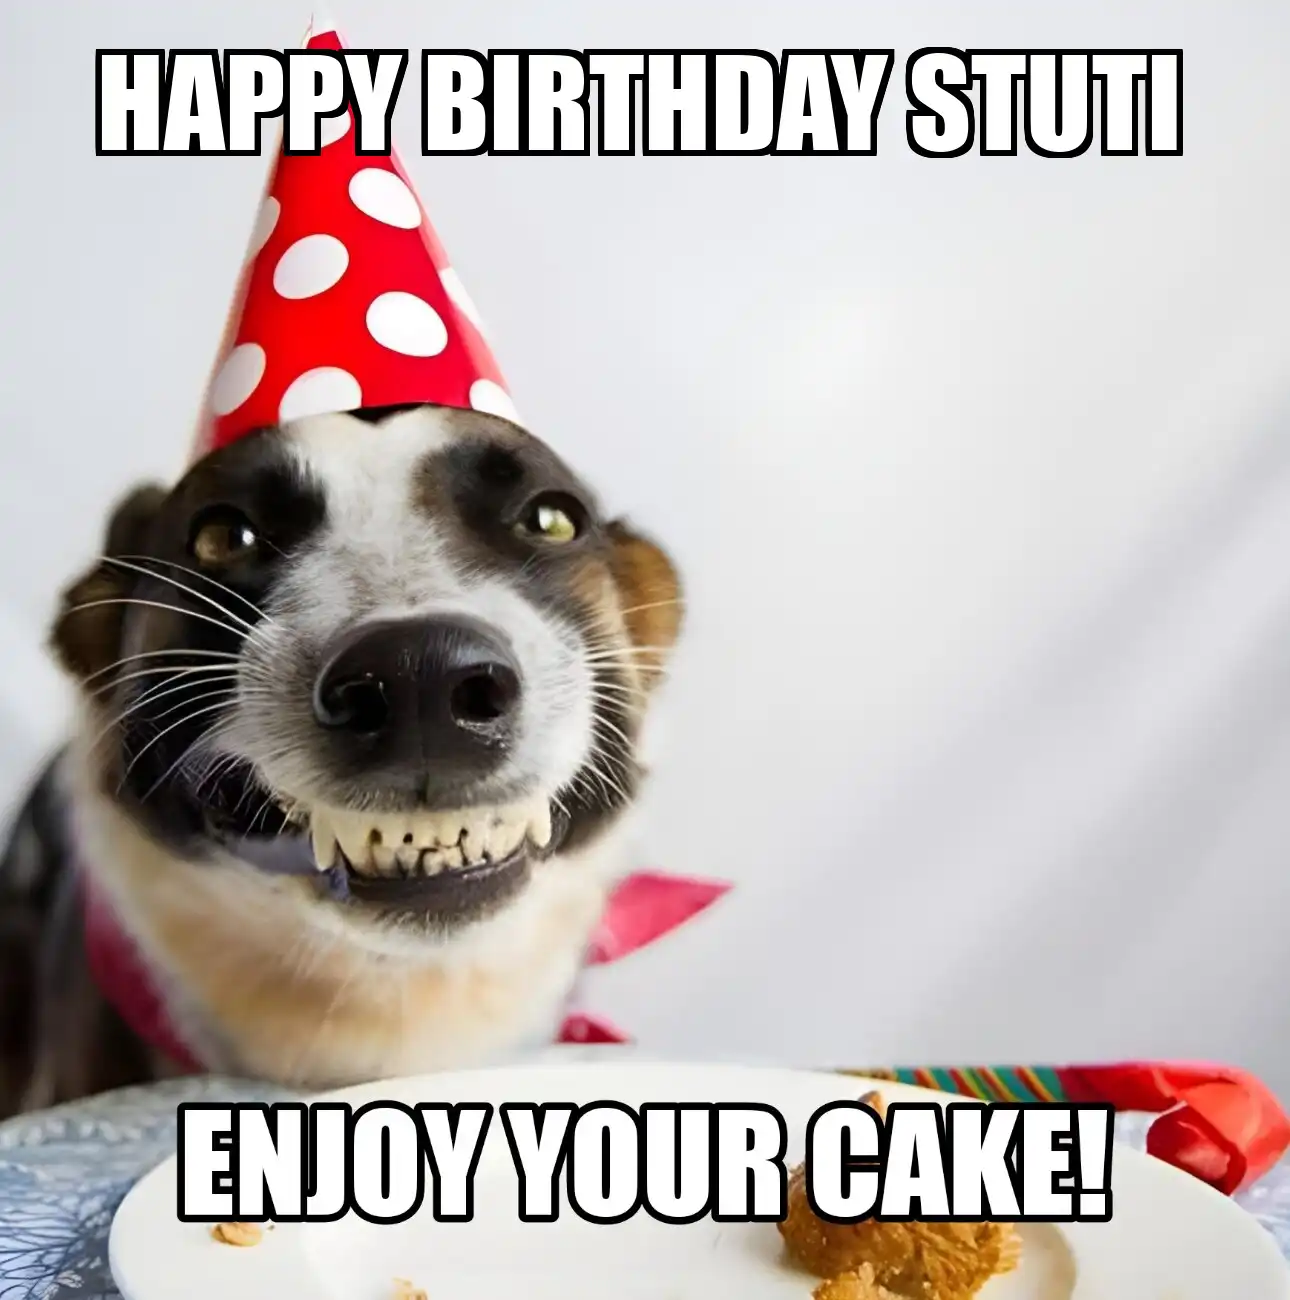 Happy Birthday Stuti Enjoy Your Cake Dog Meme